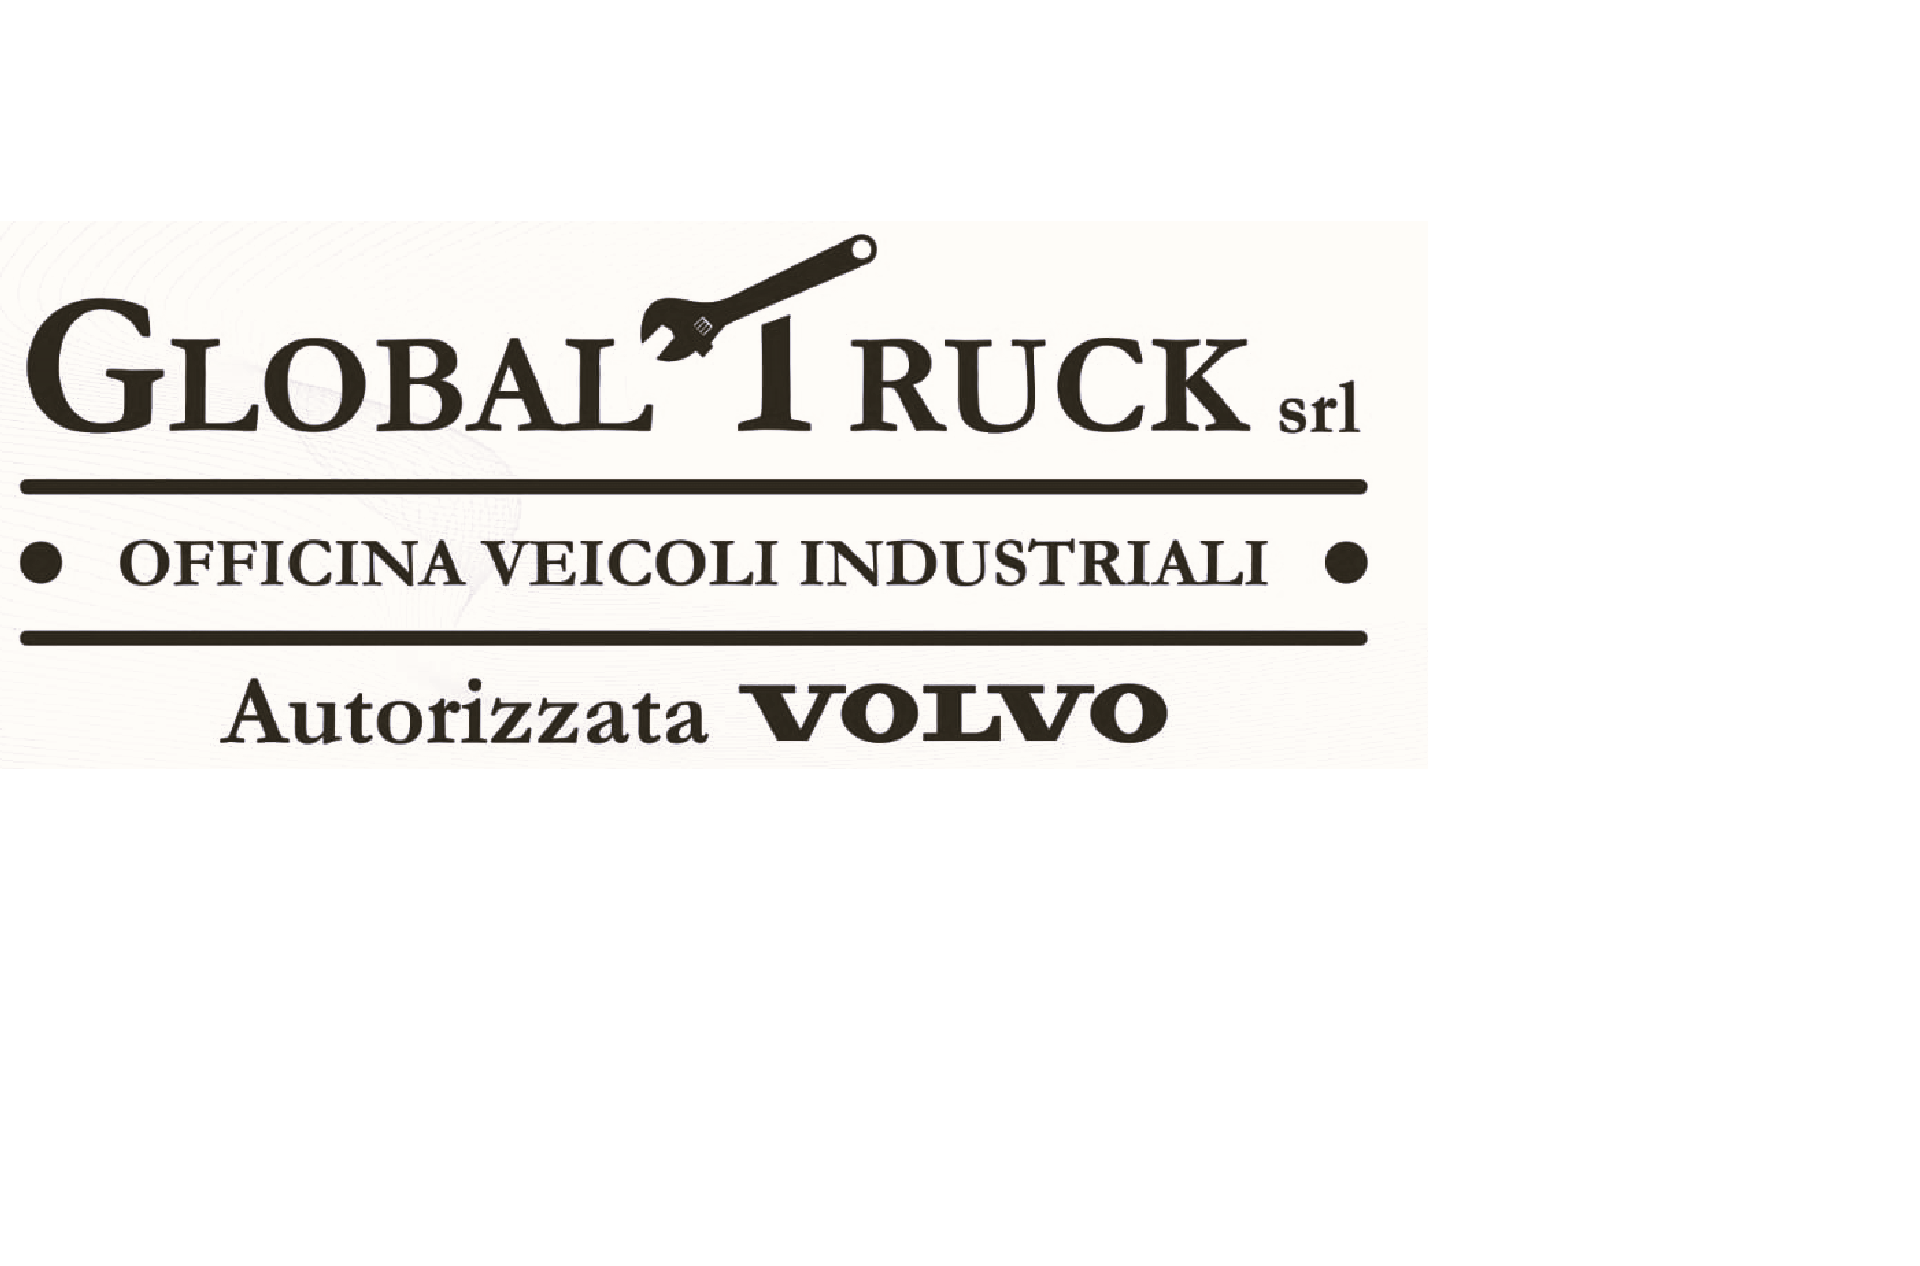 GLOBAL TRUCK SRL